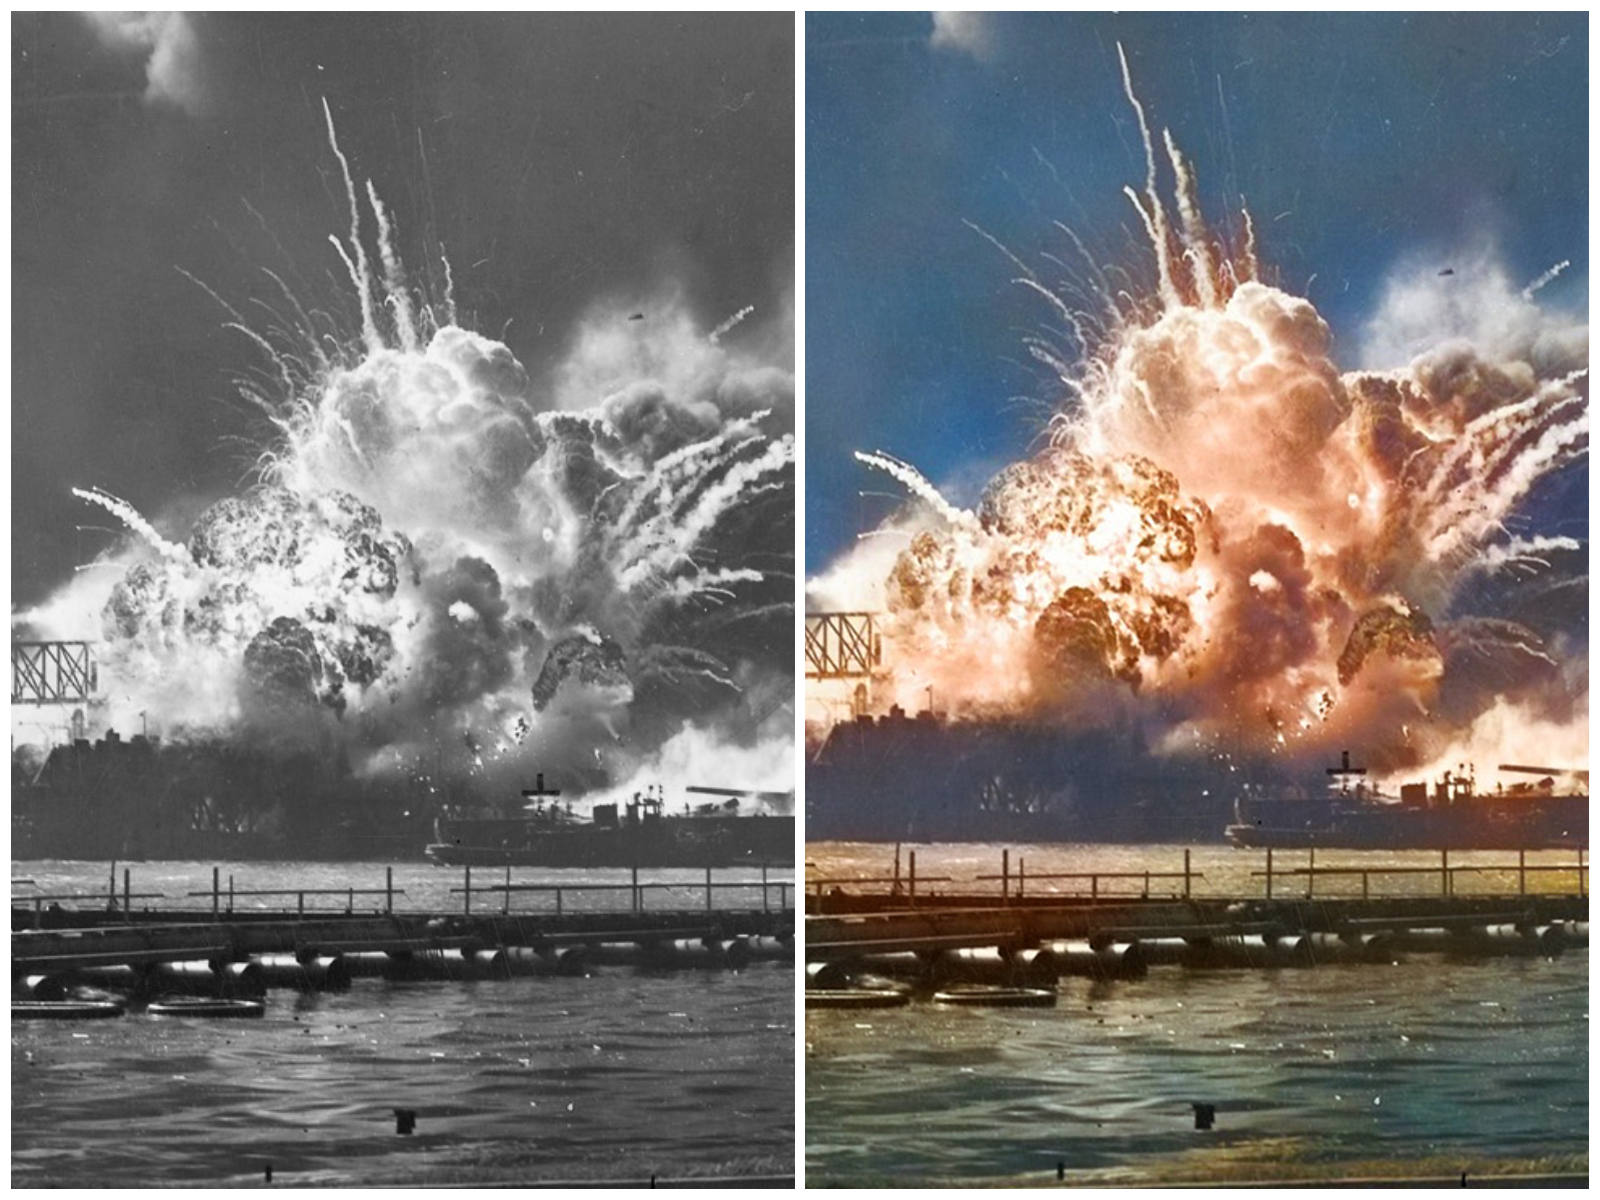 真珠湾攻撃から81年。太平洋戦争の火蓋を切った戦いがカラー化写真で